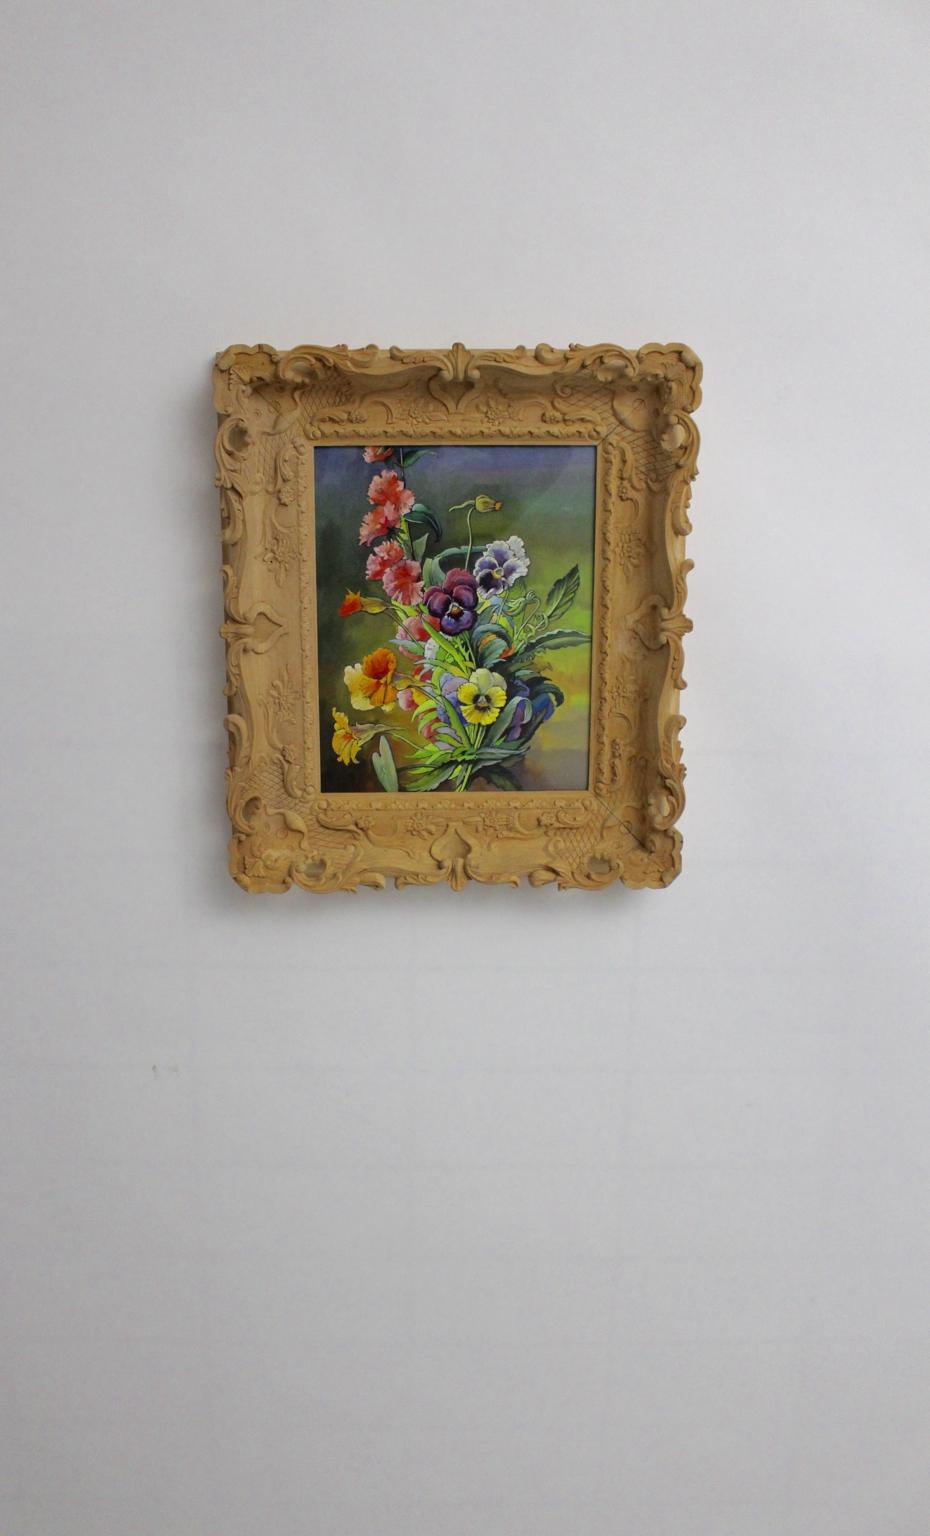 Das vorliegende reizvolle Gemälde zeigt ein Blumenmotiv in leuchtenden Farben von Max Dättl, 1960, Wien.
Max Dättl, (1894-1989)
Das naturalistische Gemälde ist in einen handgeschnitzten Bassholzrahmen eingefasst, der auch Blumen zeigt.
Aquarelle